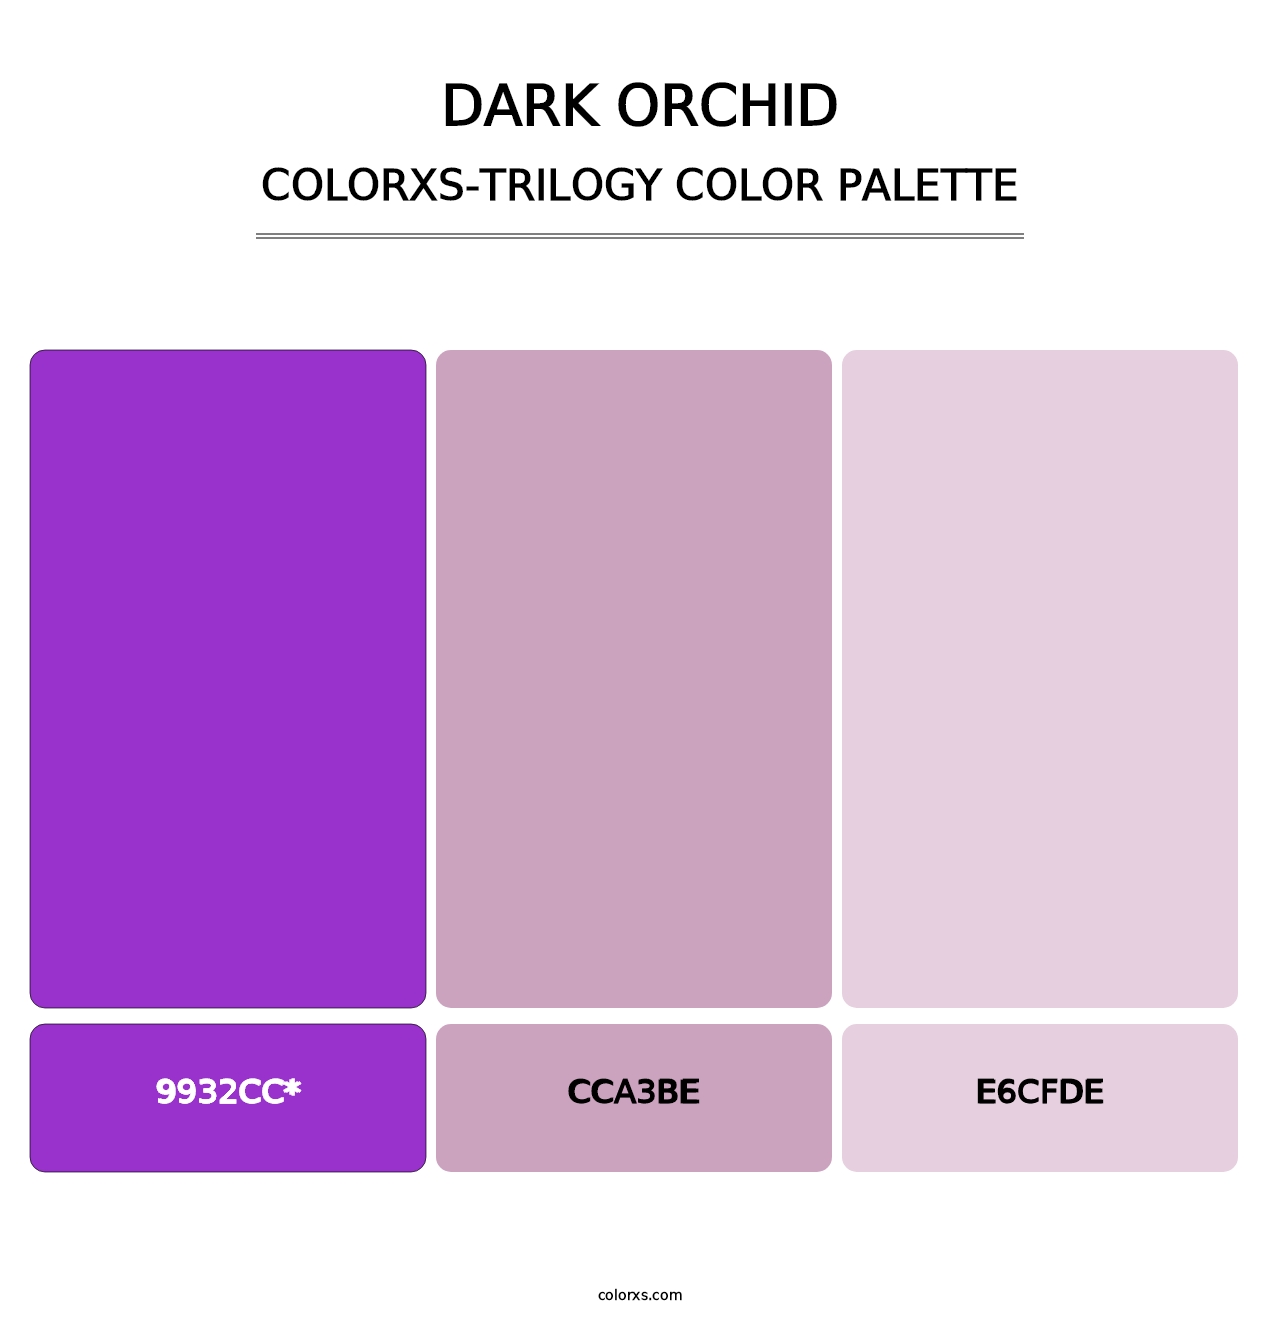 Dark Orchid - Colorxs Trilogy Palette